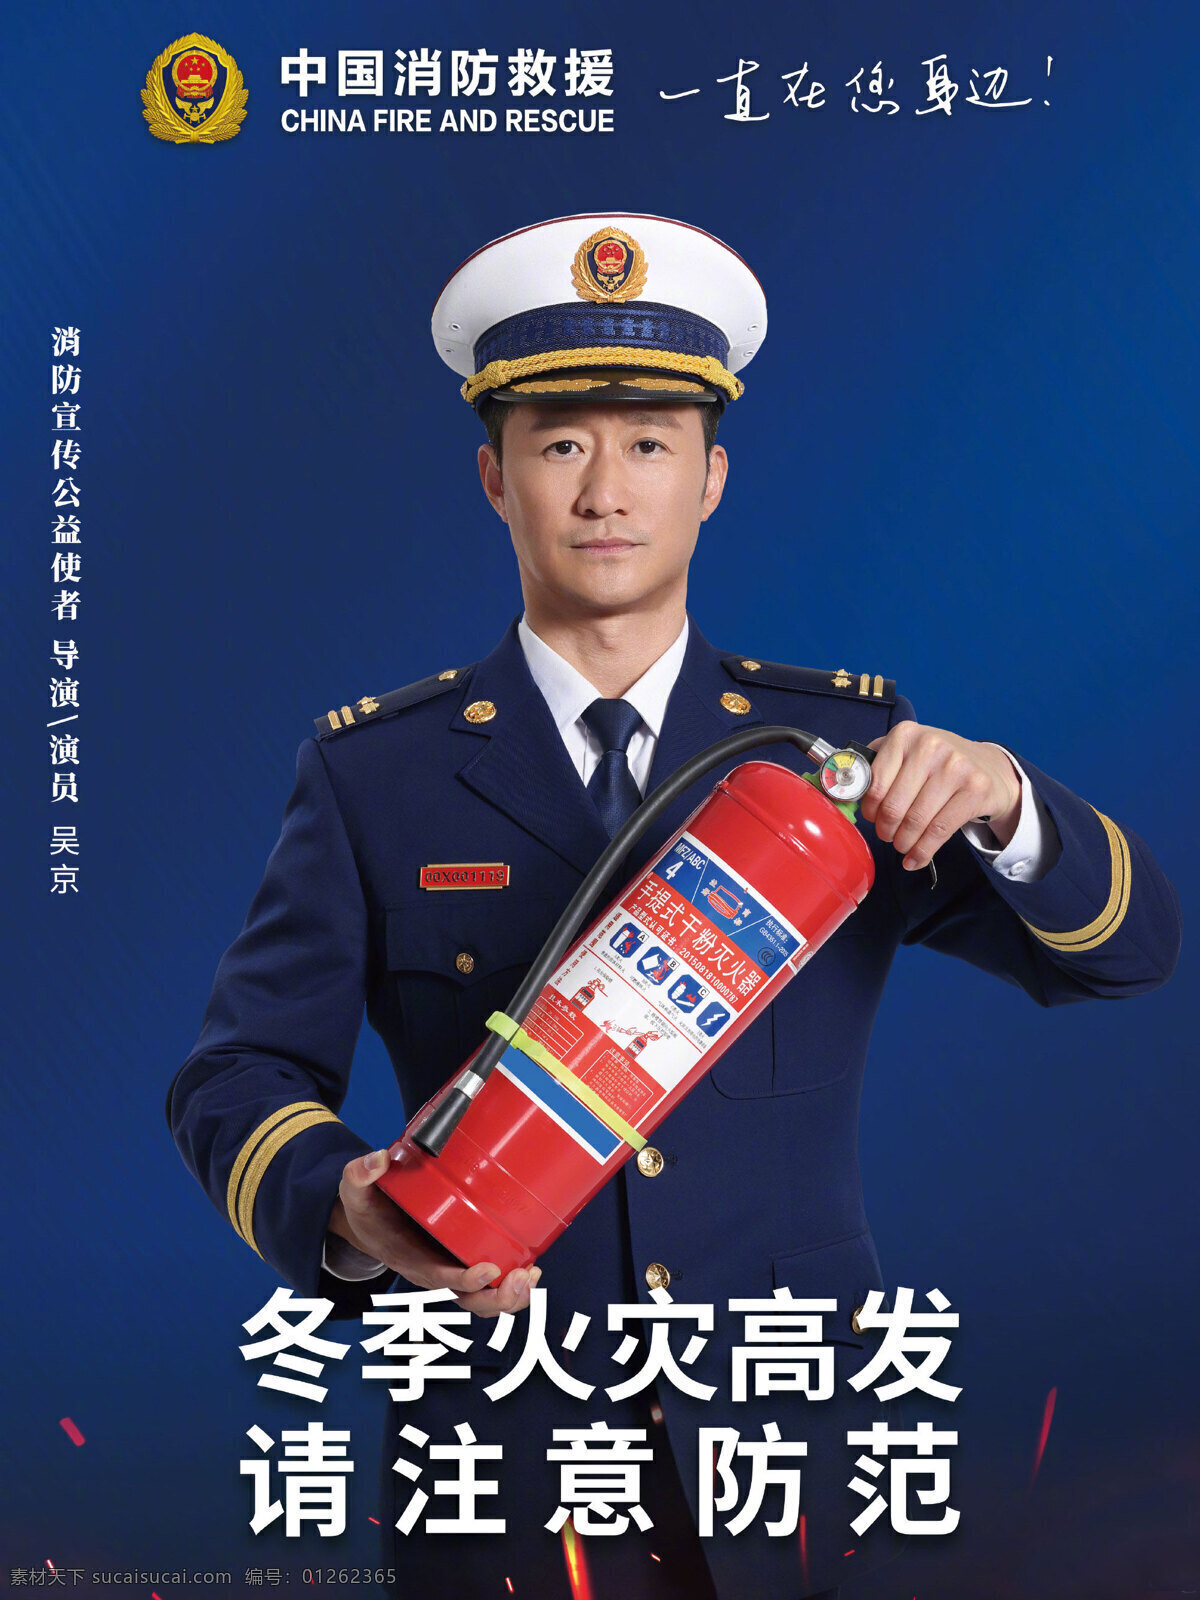 中国 消防 救援 消防救援 中国消防 安全用火 火灾 吴京 公益宣传 消防公益